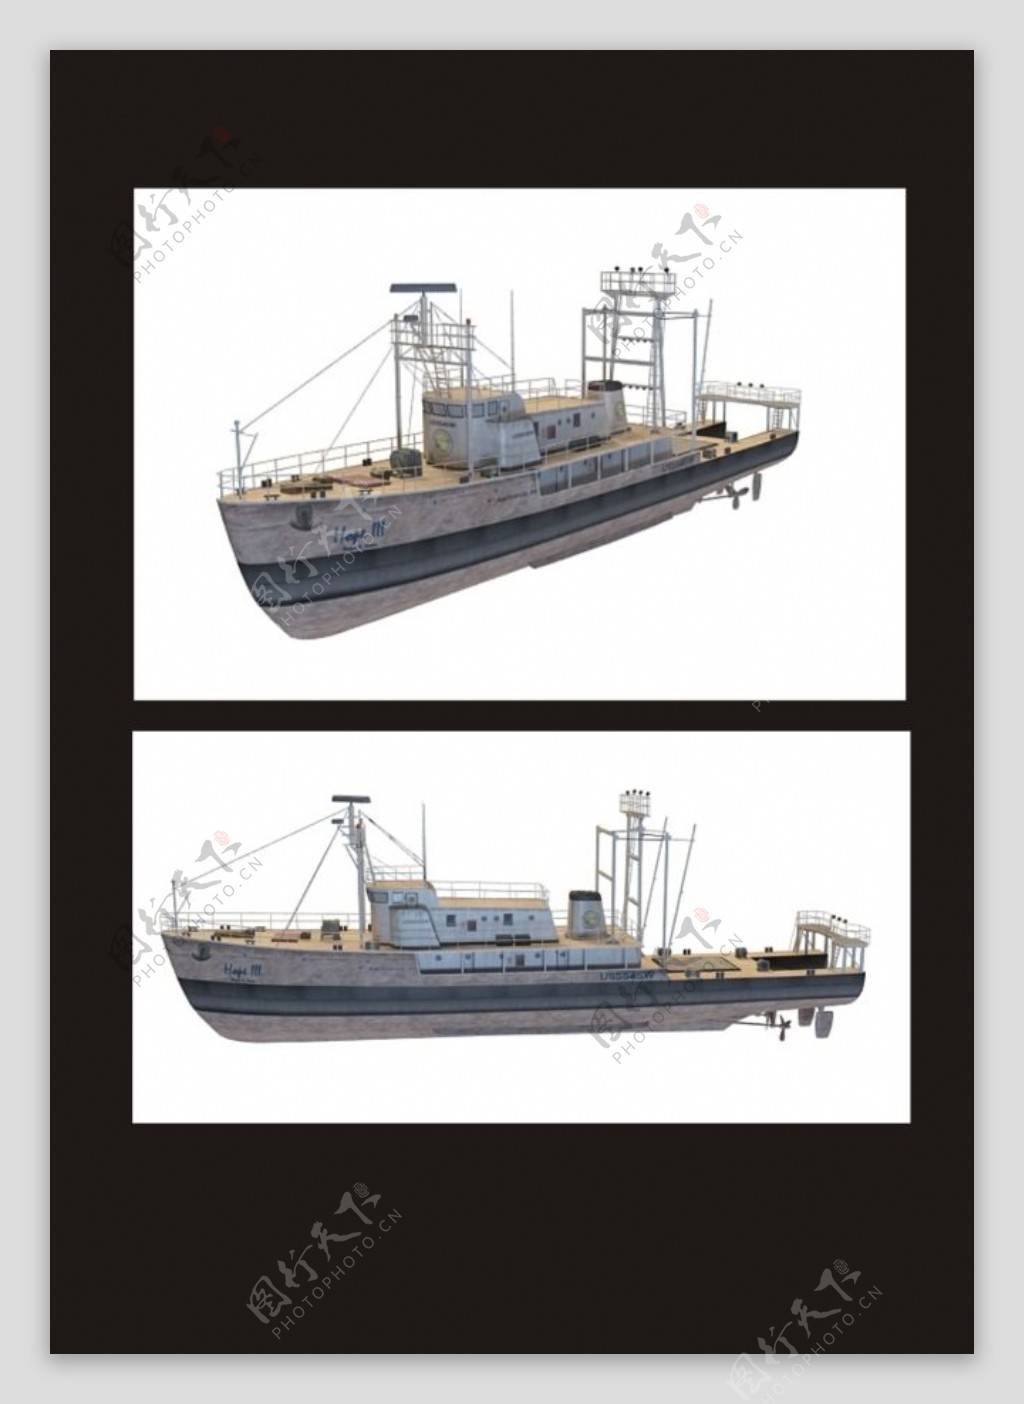 轮船3d模型